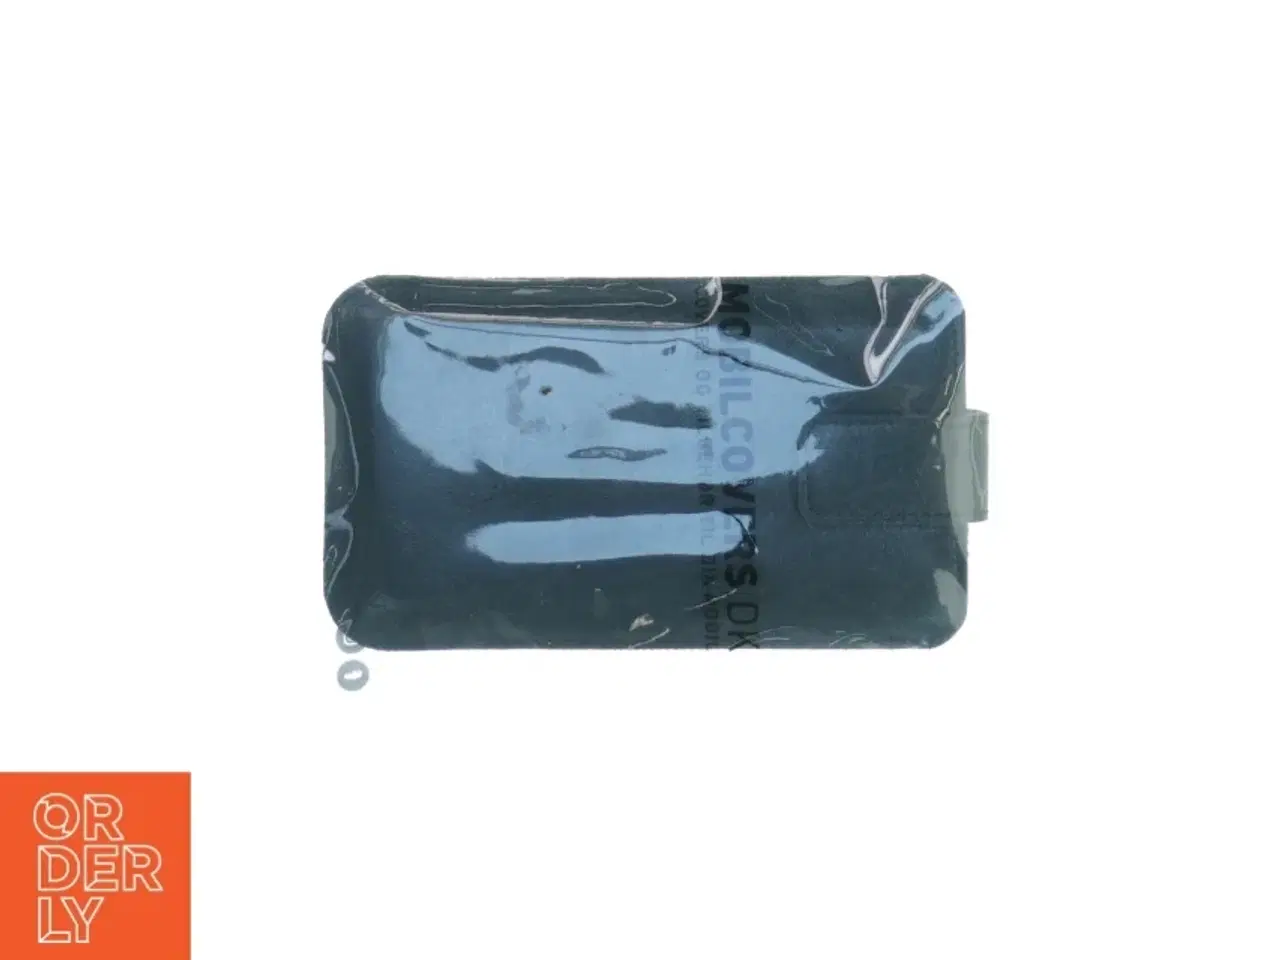 Billede 2 - Mobil pung fra Mobilcoversdk (str. 15 cm x 10 cm )